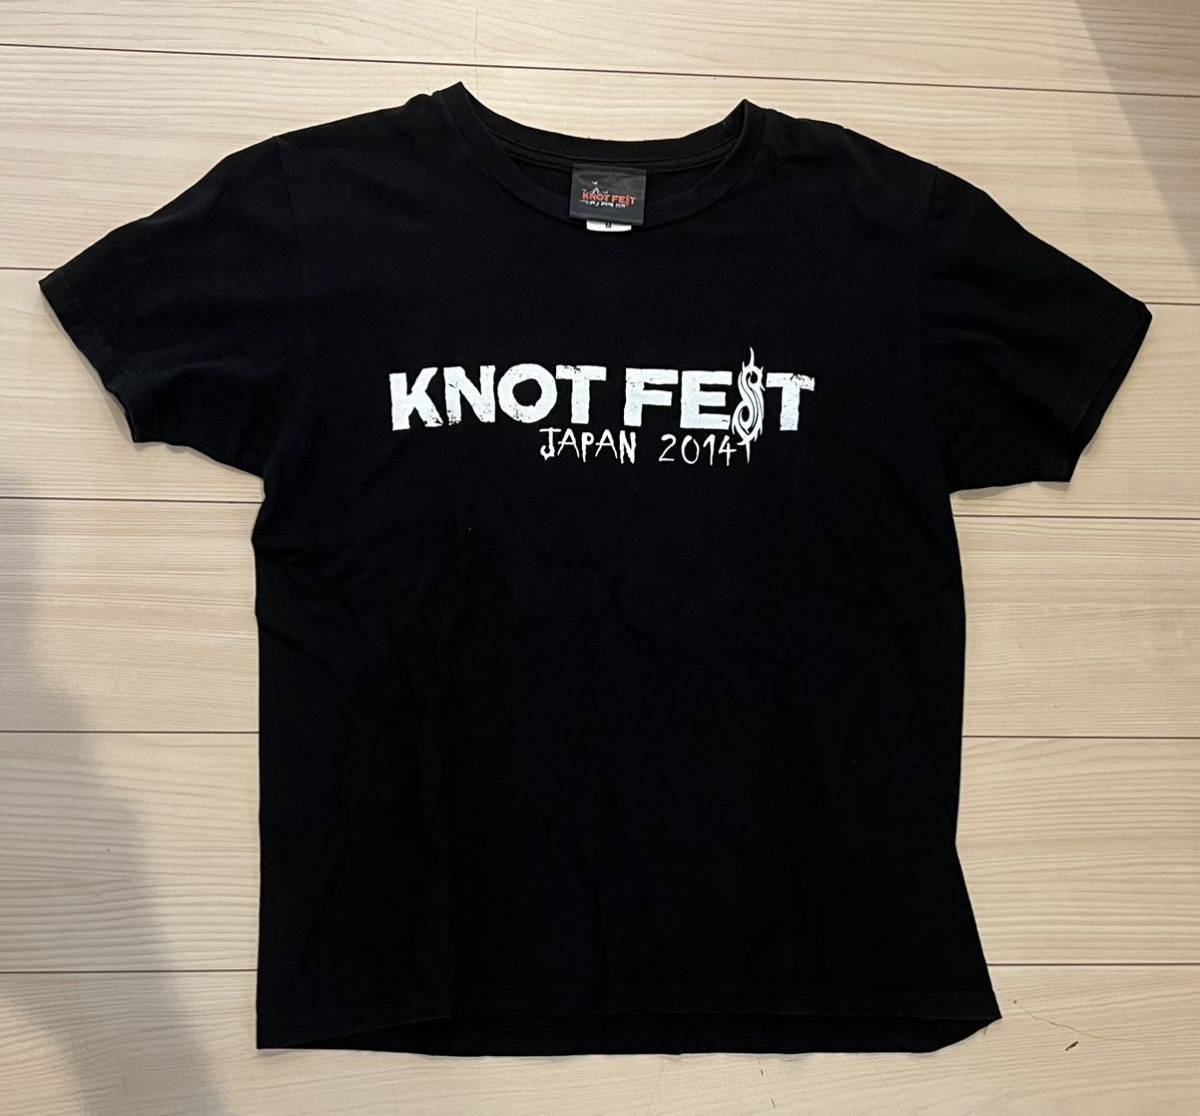 スリップノット ノットフェス slipknot 2014 幕張メッセ 記念Tシャツ Mサイズの画像1